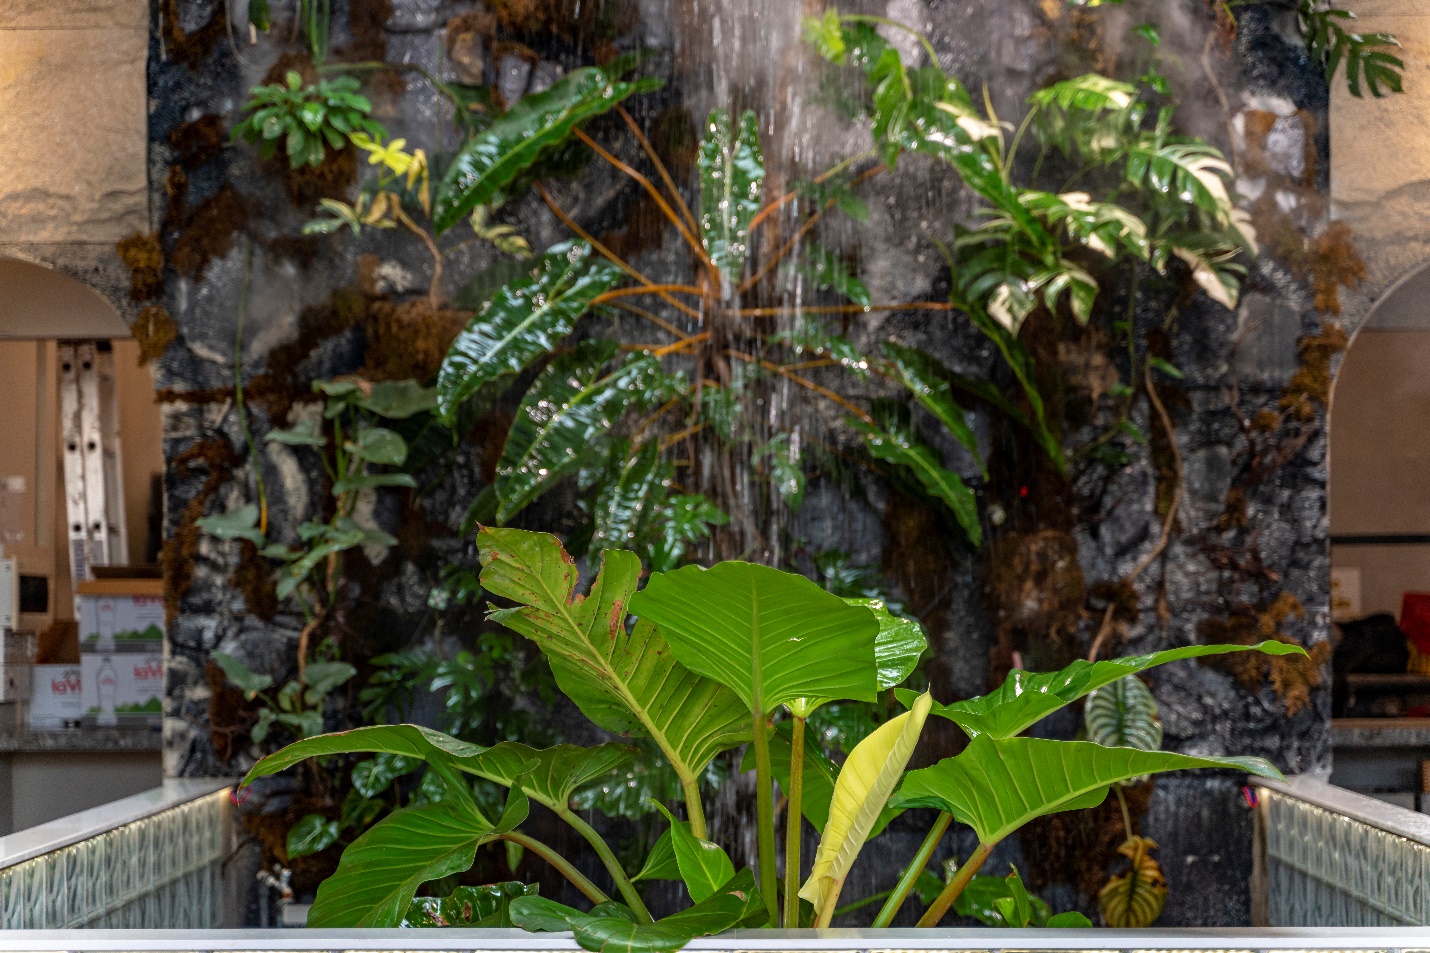 Tropical Waterfall - Không gian mới độc đáo tại Ba Gác Nướng & Bia Lê Văn Sỹ - Ảnh 5.